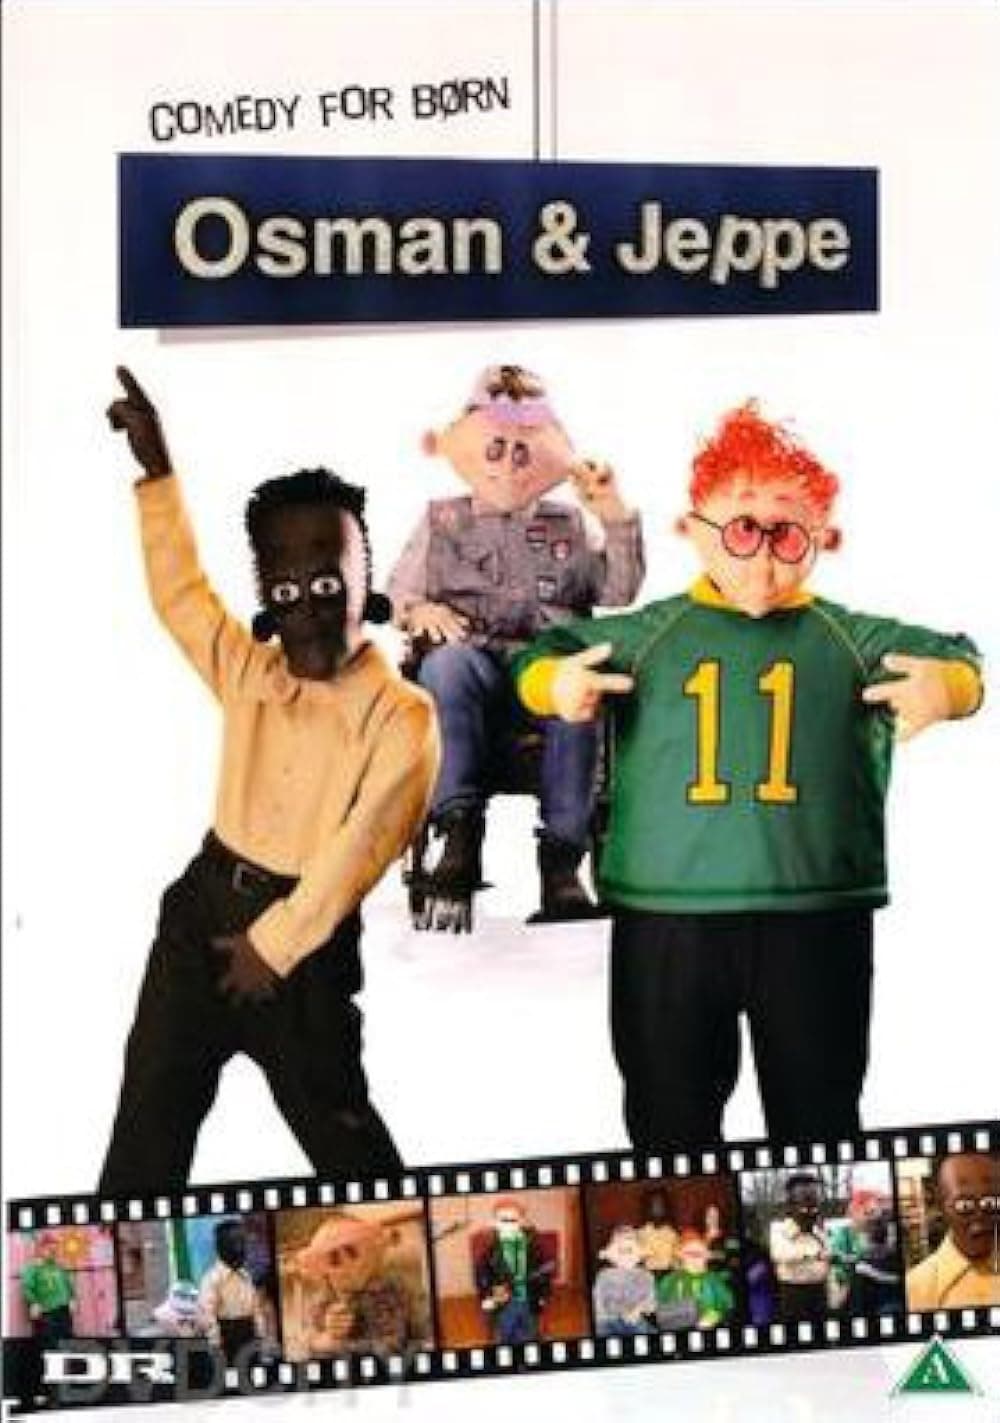 Osman & Jeppe